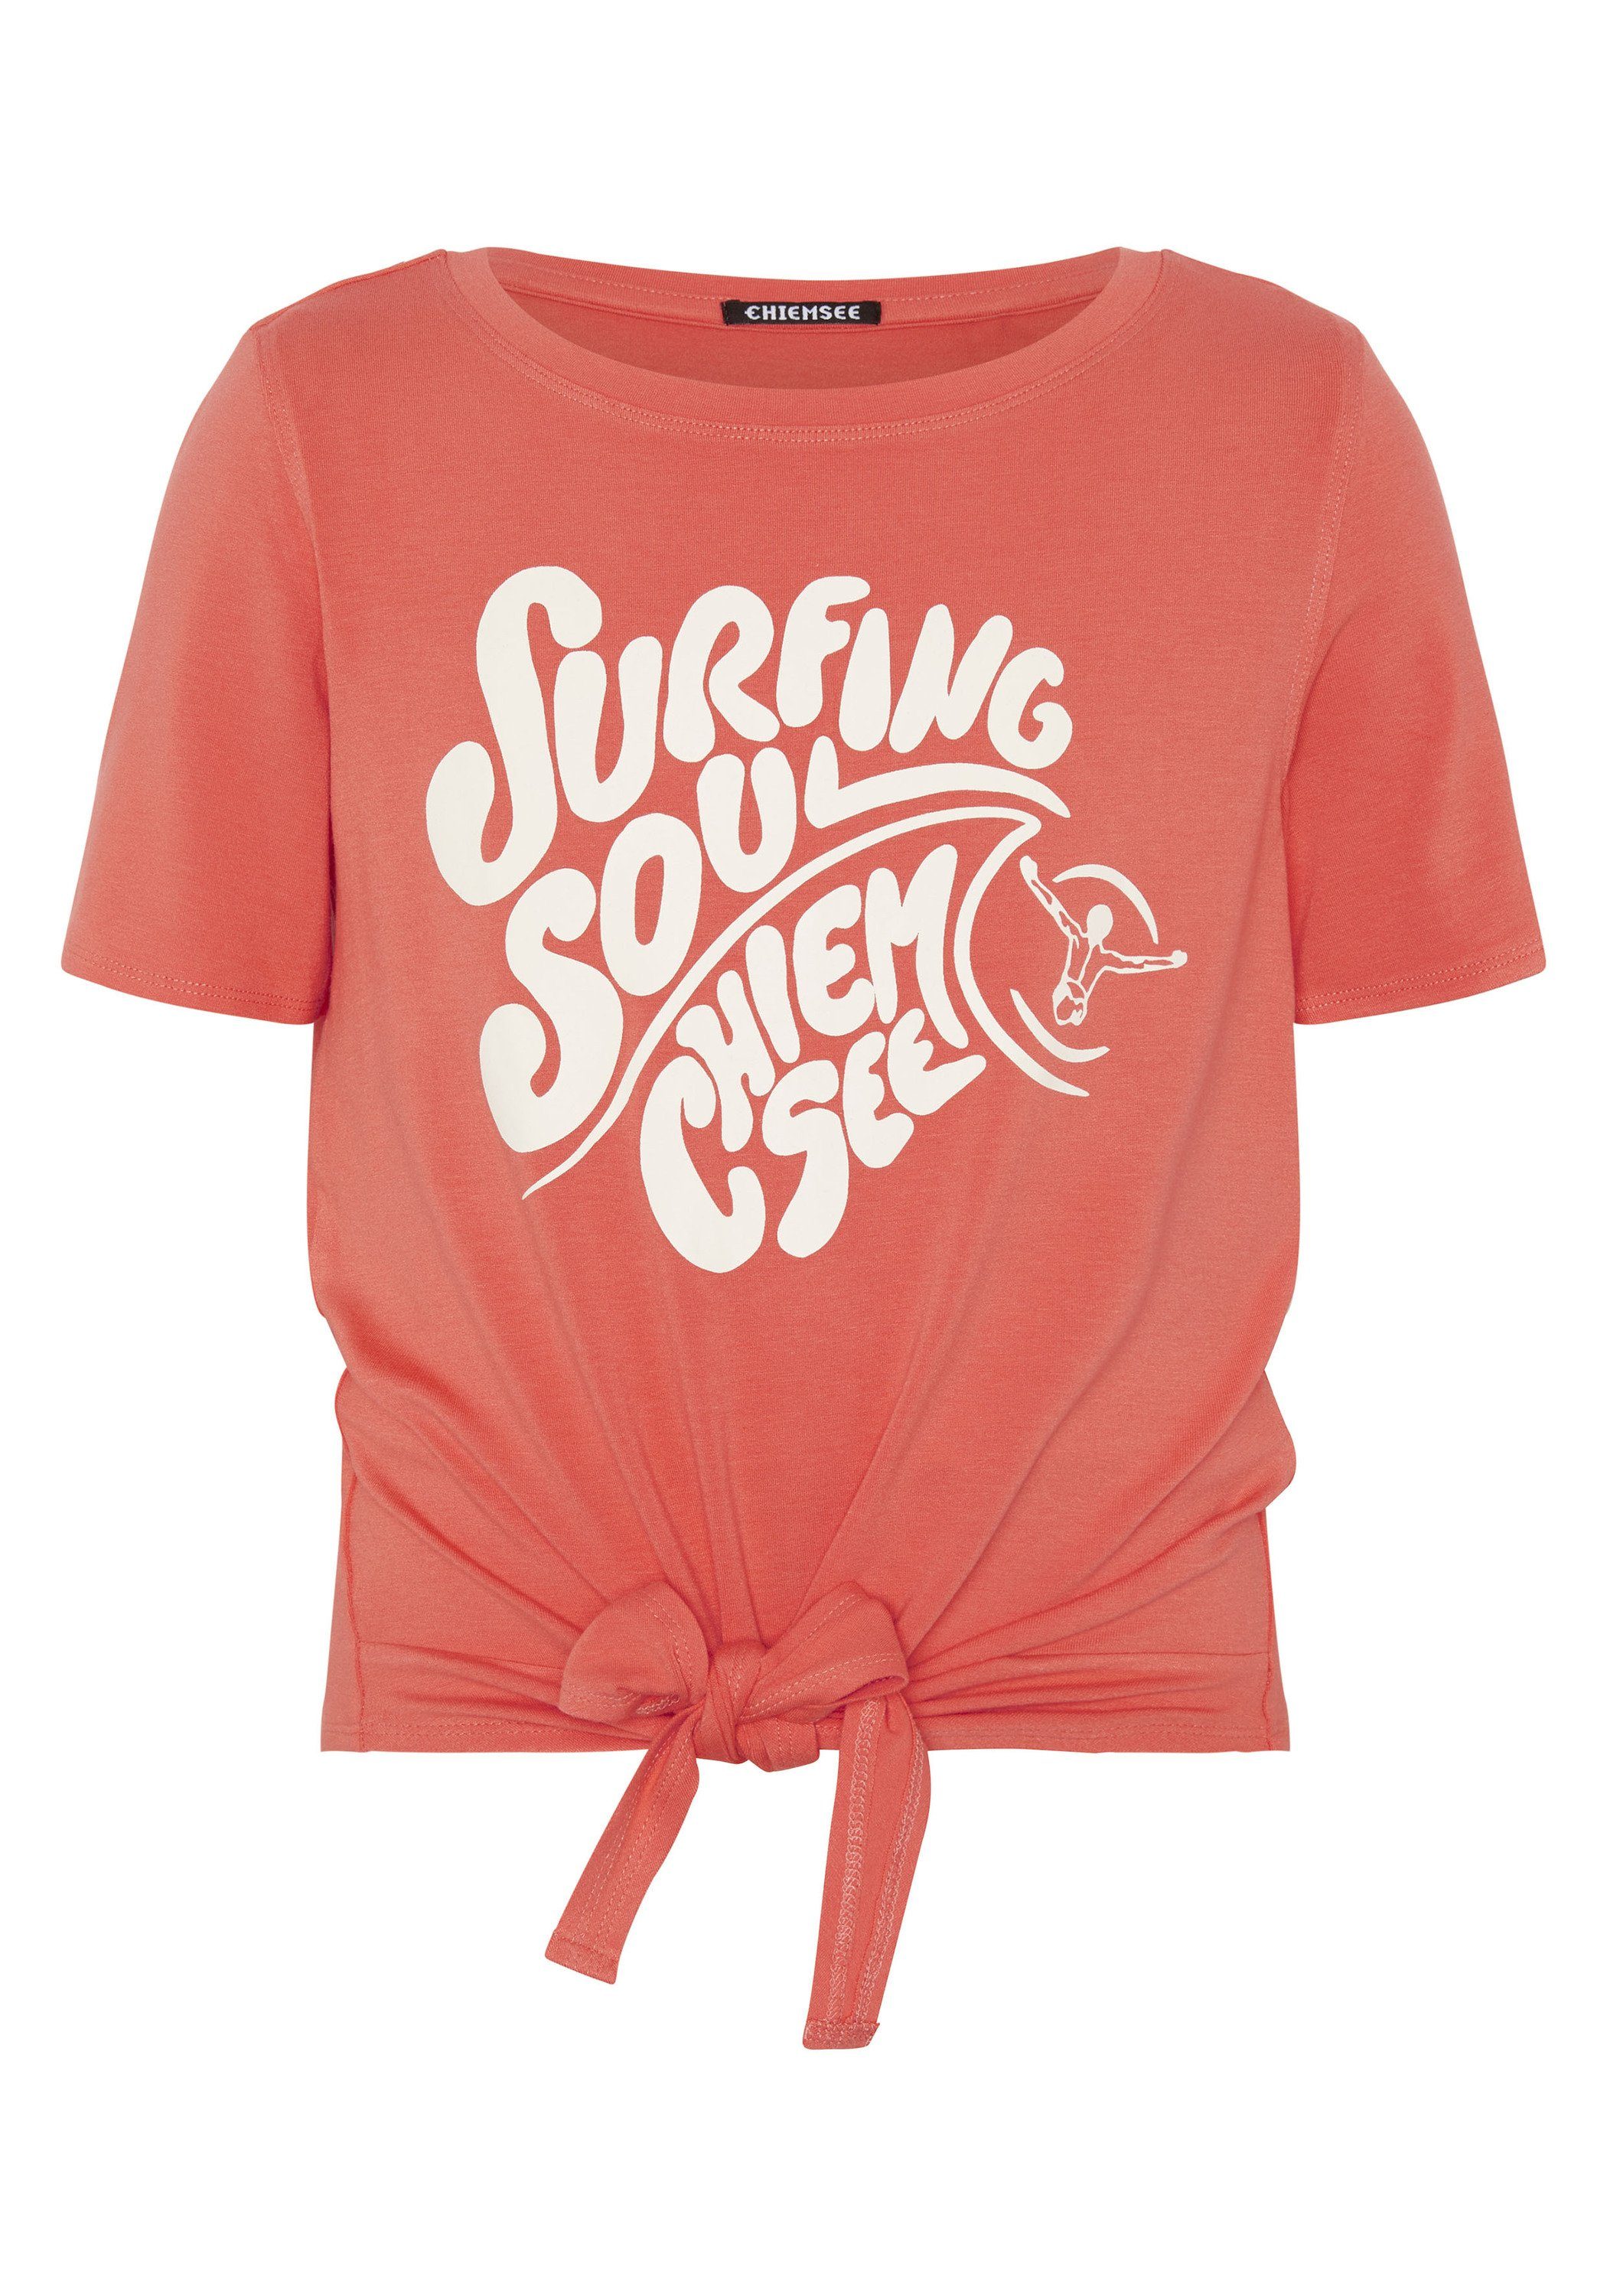 Chiemsee Print-Shirt Shirt mit Print und Schleifen-Akzent 1 17-1656 Hot Coral